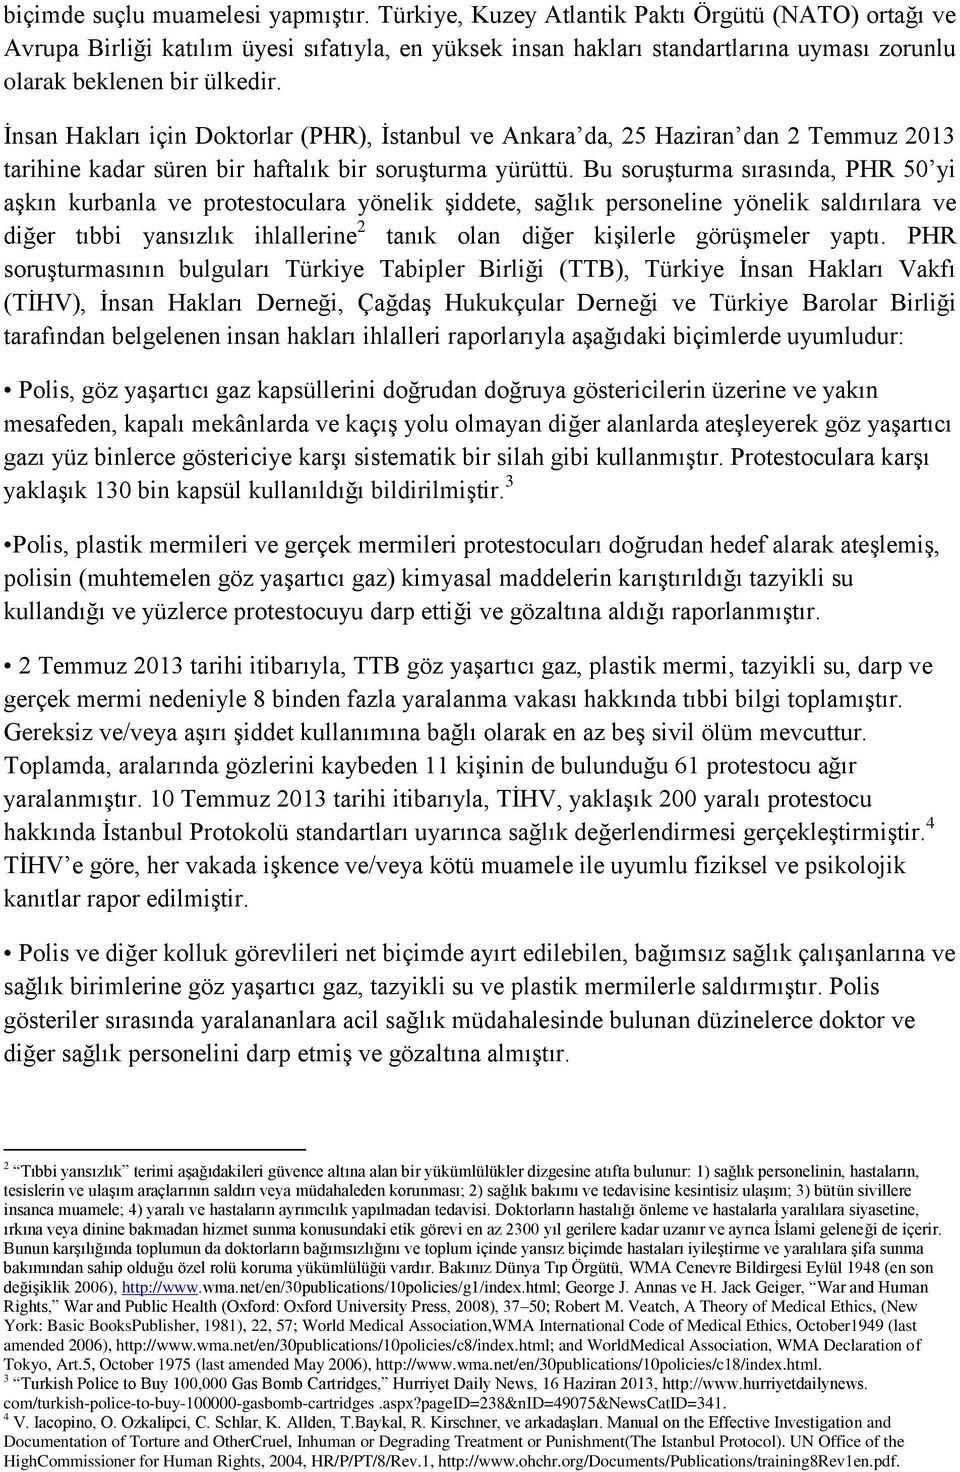 İnsan Hakları için Doktorlar (PHR), İstanbul ve Ankara da, 25 Haziran dan 2 Temmuz 2013 tarihine kadar süren bir haftalık bir soruşturma yürüttü.